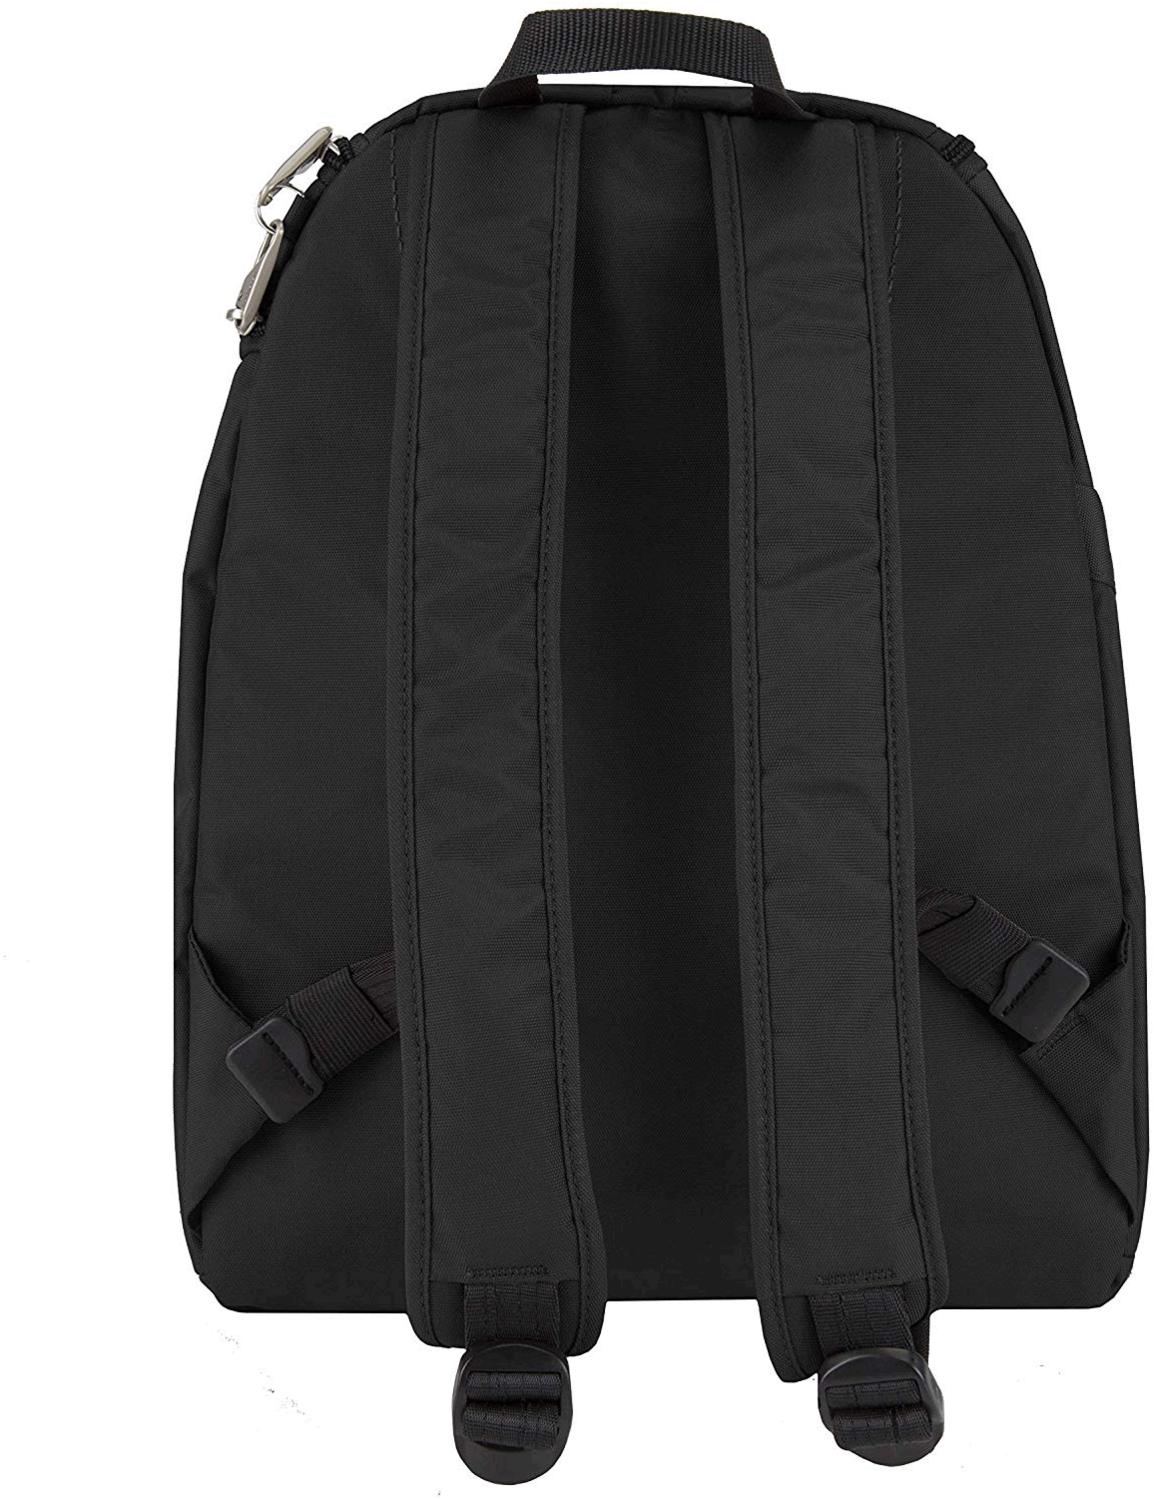 Travelon Backpack,Black,One Size, Black 1, Size One Size CgRG | eBay